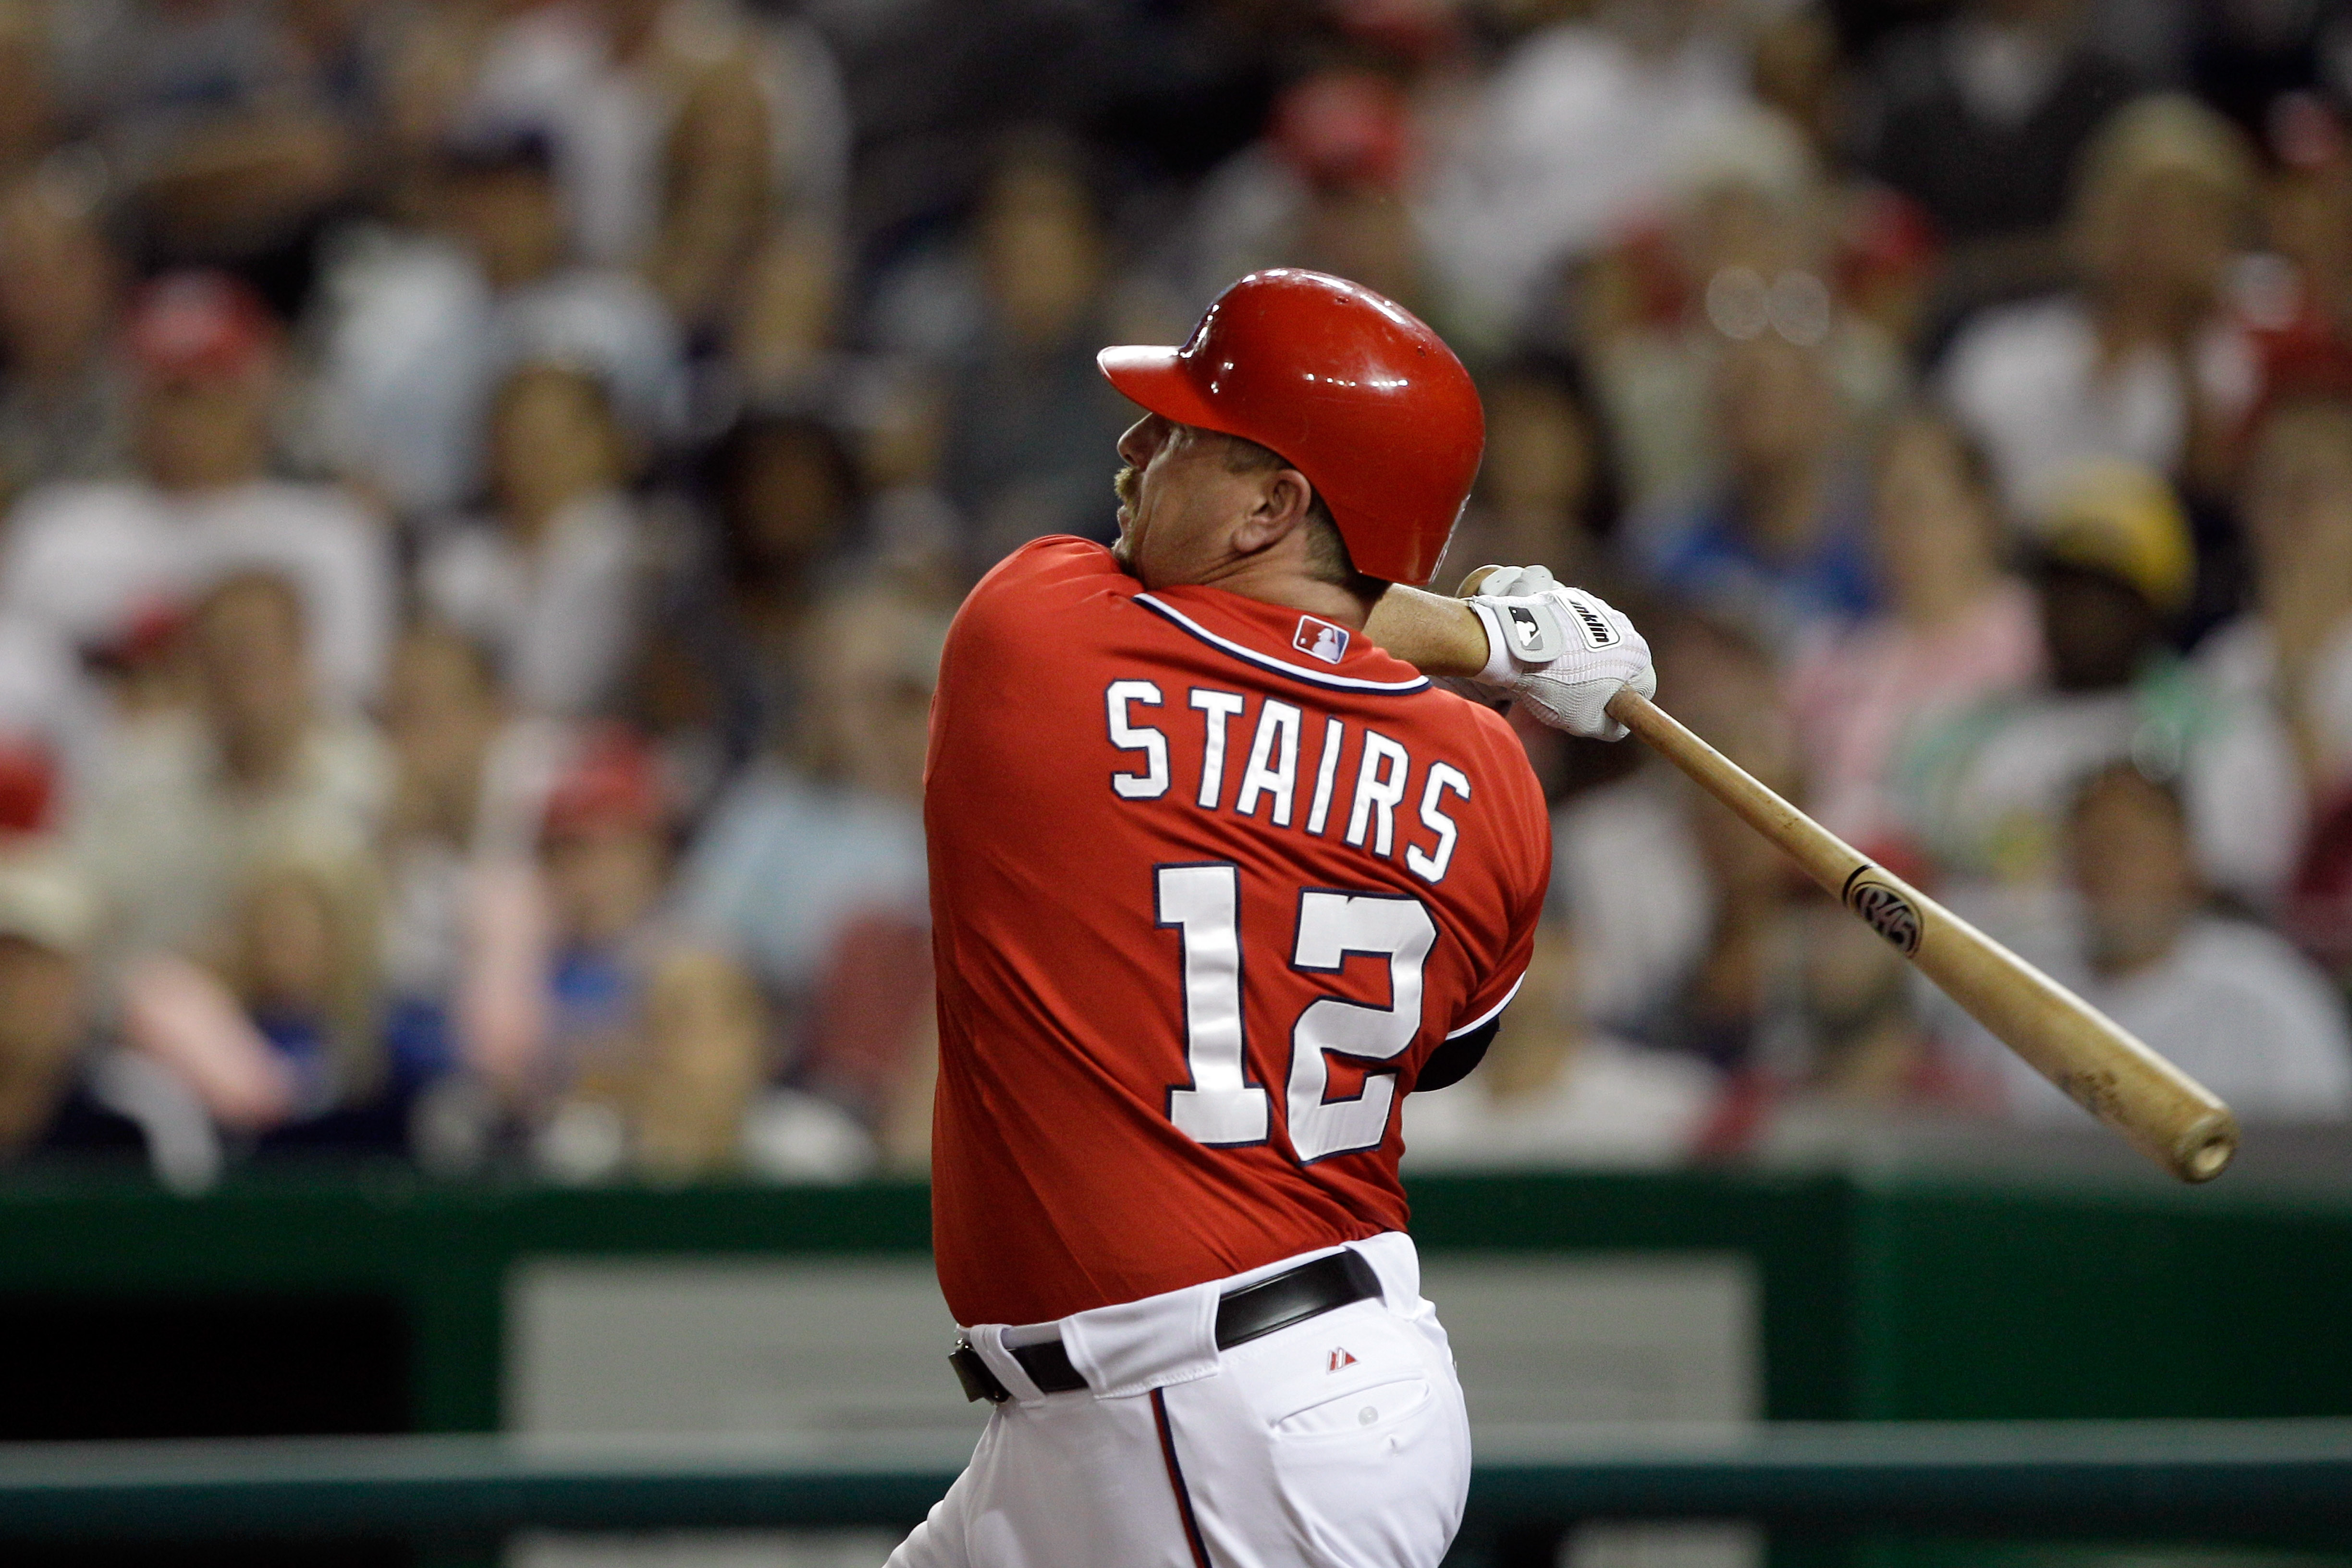 MLB Journeymen: Matt Stairs, The Pinch Hit Home Run King